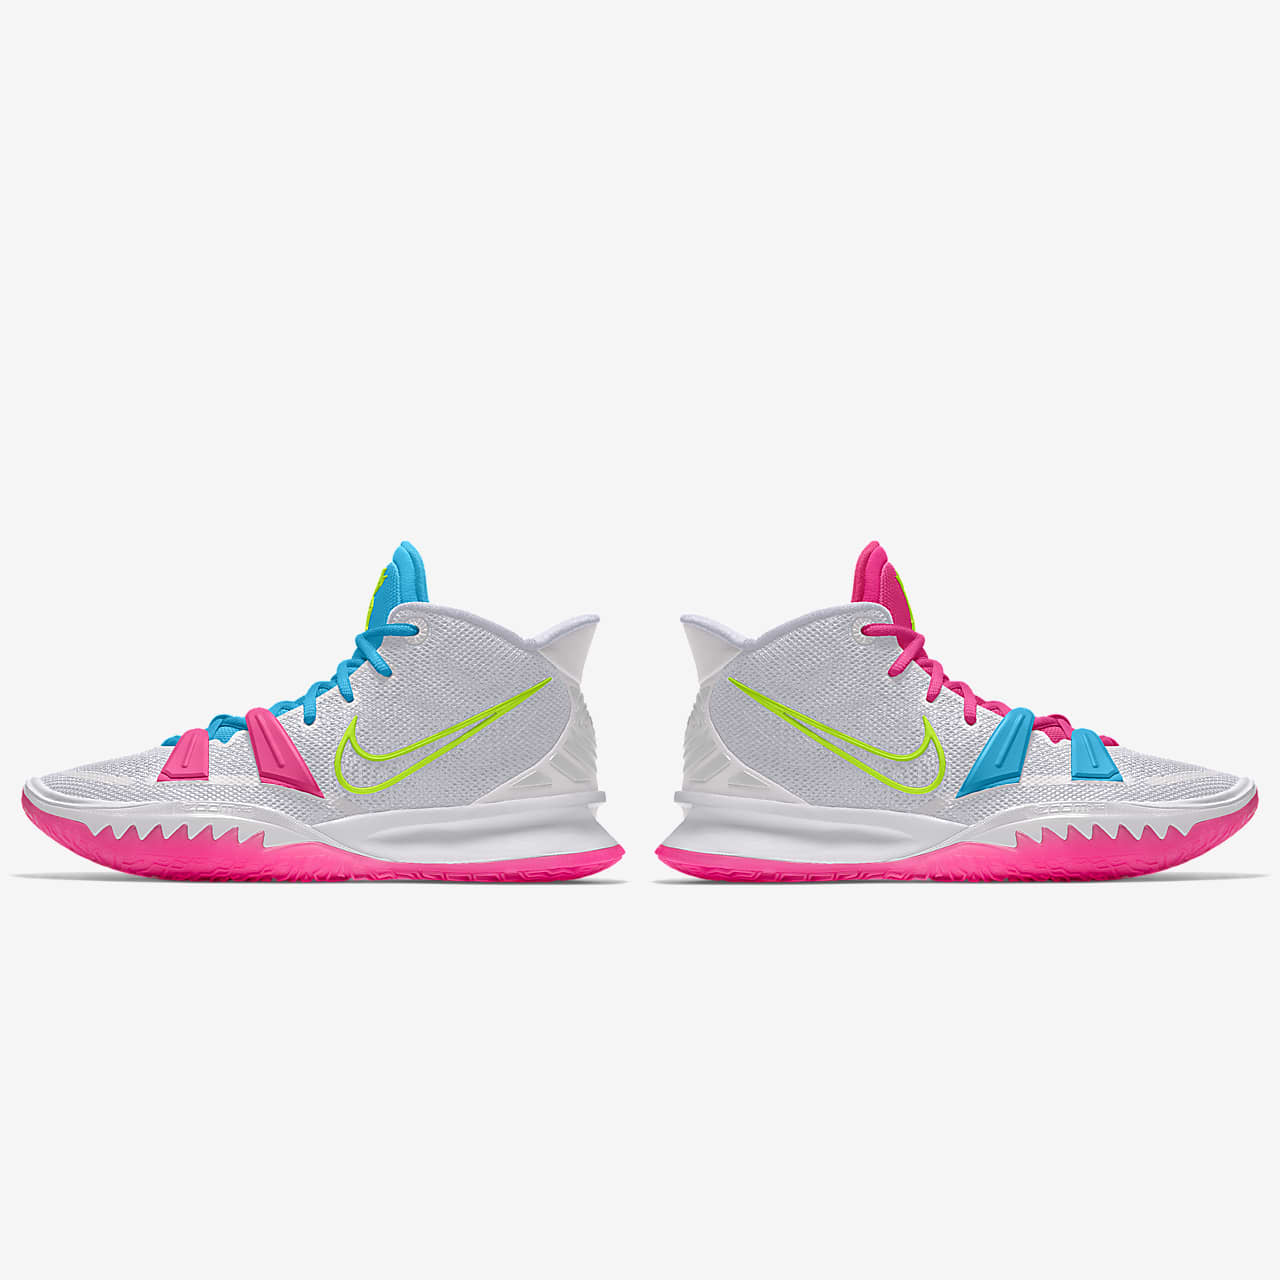 kyrie 6 by you custom basketball shoe